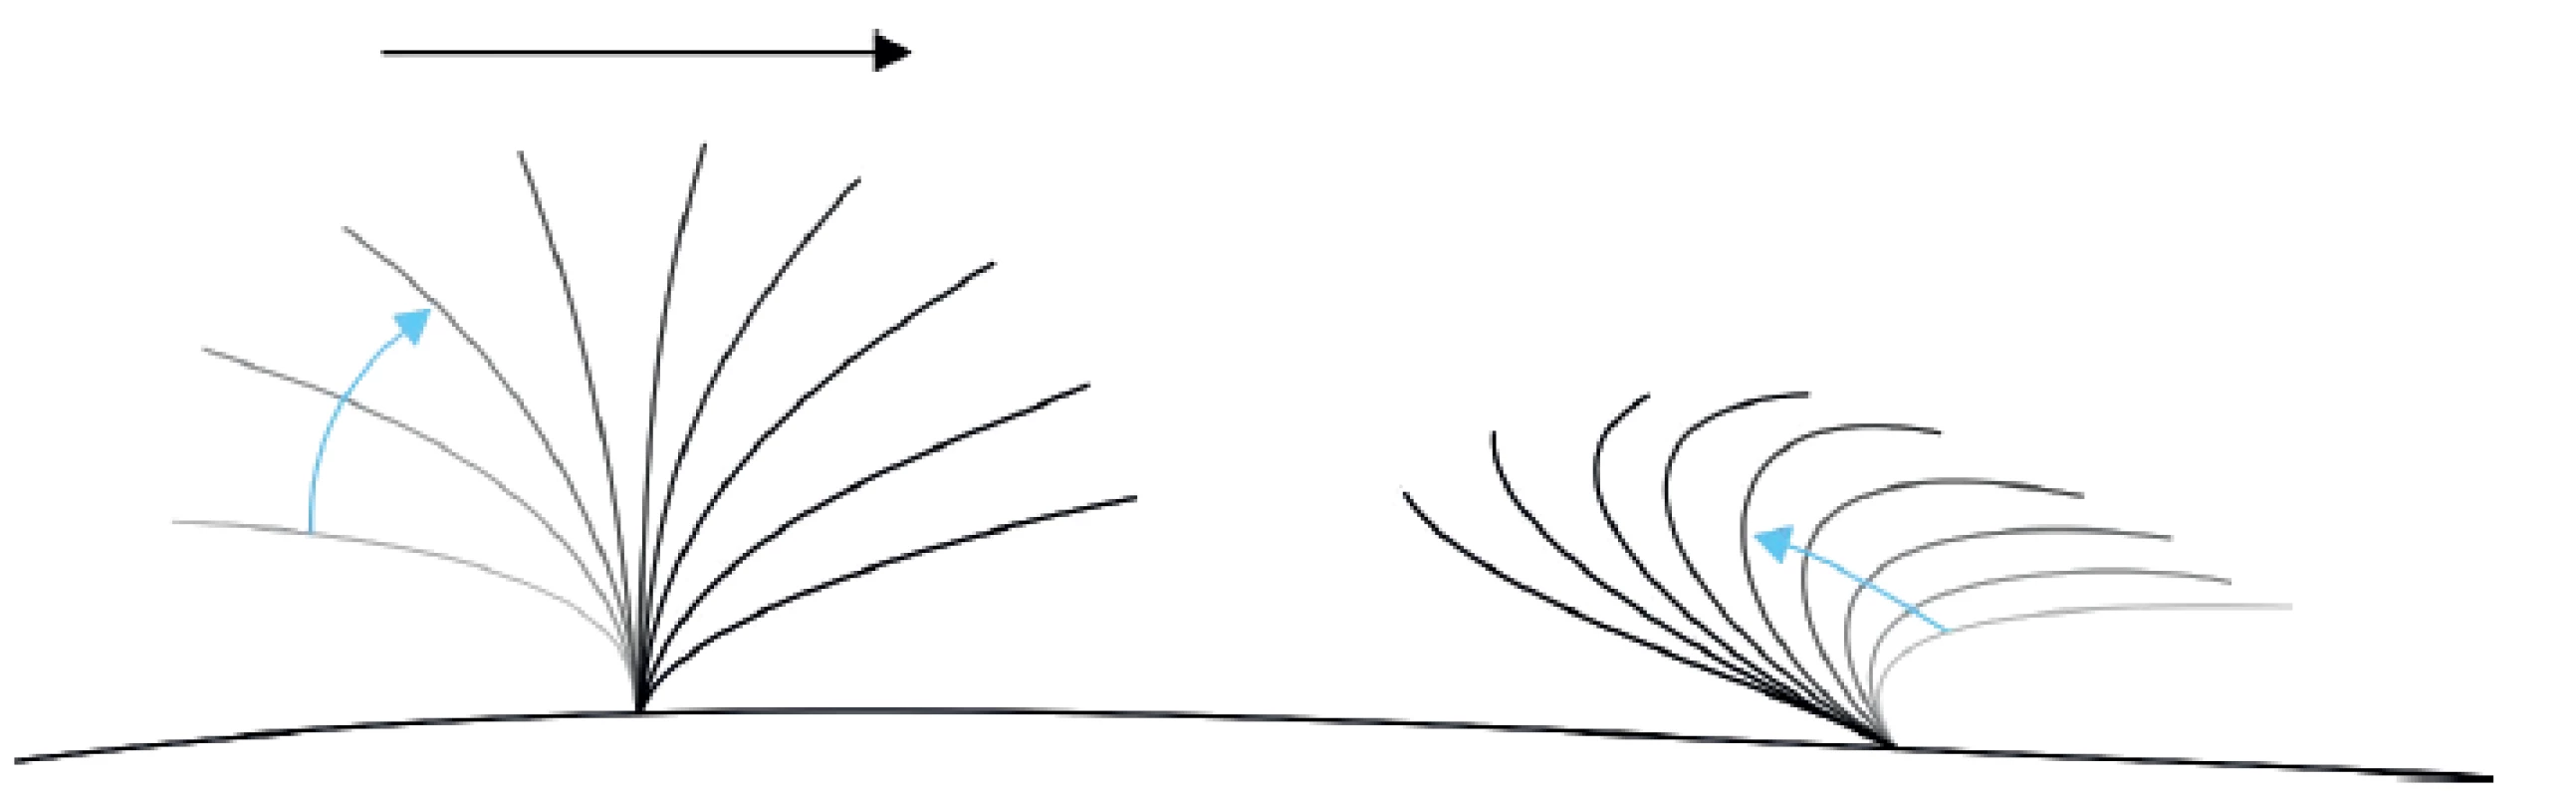 Schéma typického pohybu řasinky v respiračním epitelu, vlevo forward stroke, vpravo backward sweep, hlen je posouván doprava.
Fig. 1. Schema of a typical motion of cilia in the respiratory epithelium, forward stroke on the left, backward sweep on the right, mucus is moved to the right.